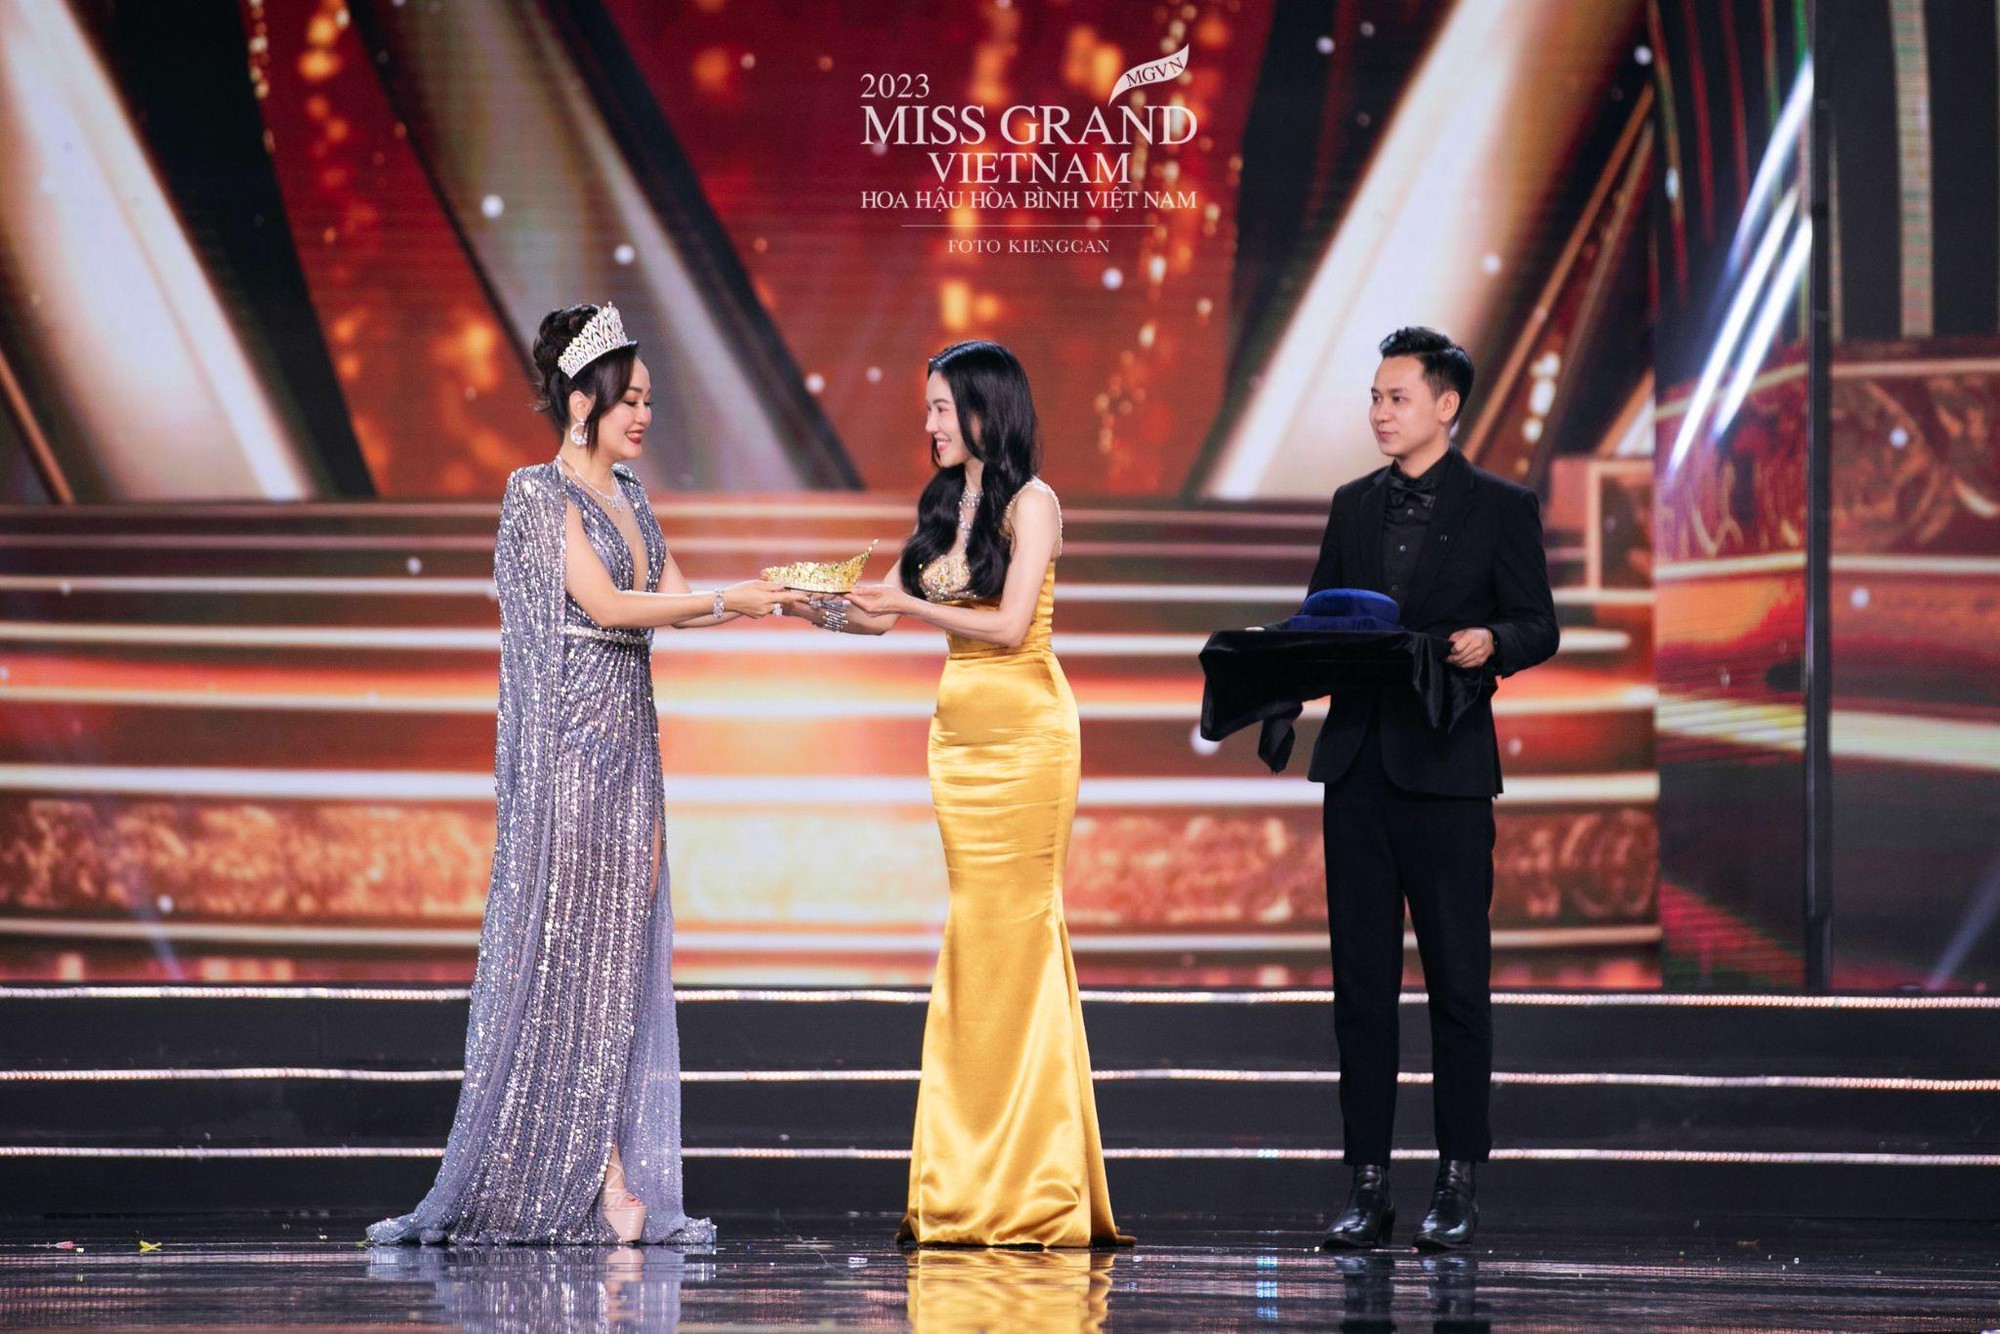 Ngọc Châu Âu đồng hành cùng Miss Grand Vietnam 2023 đi tìm chủ nhân vương miện “Wings of the grand” - Ảnh 1.